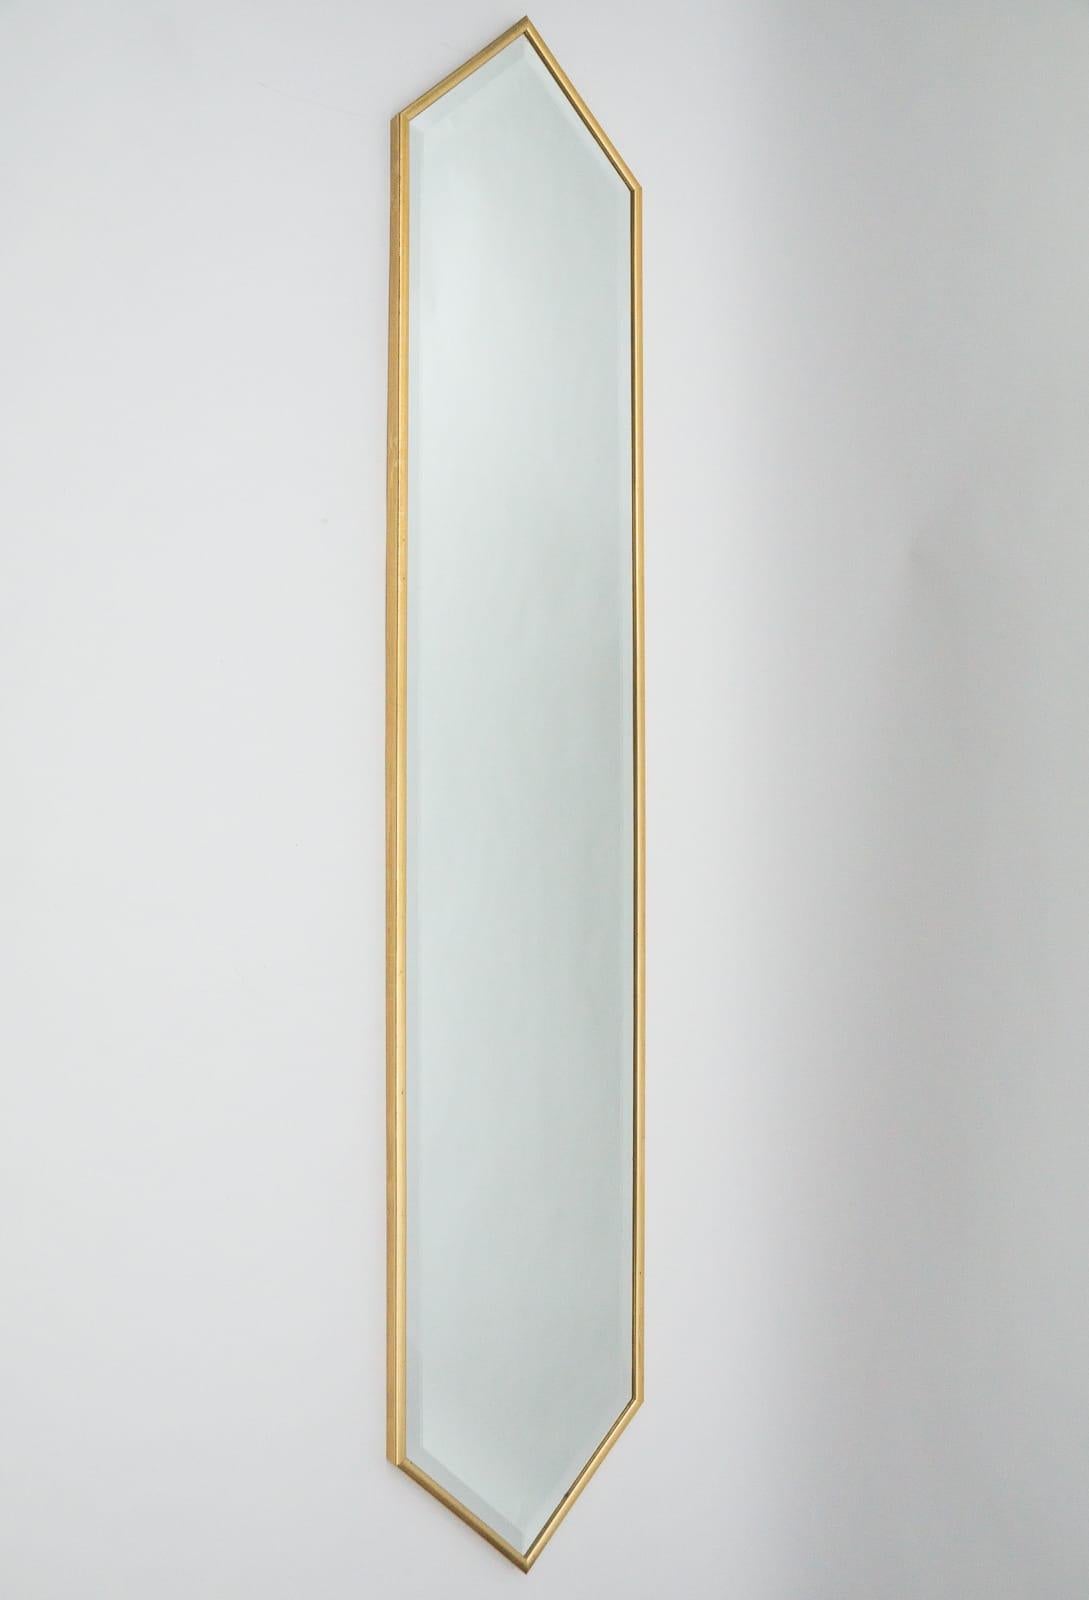 Sie bieten hier drei gleich große, schöne und elegante Spiegel in einer traumhaften Form und Höhe von 198cm.

Die Spiegel sind rundherum geschliffen.